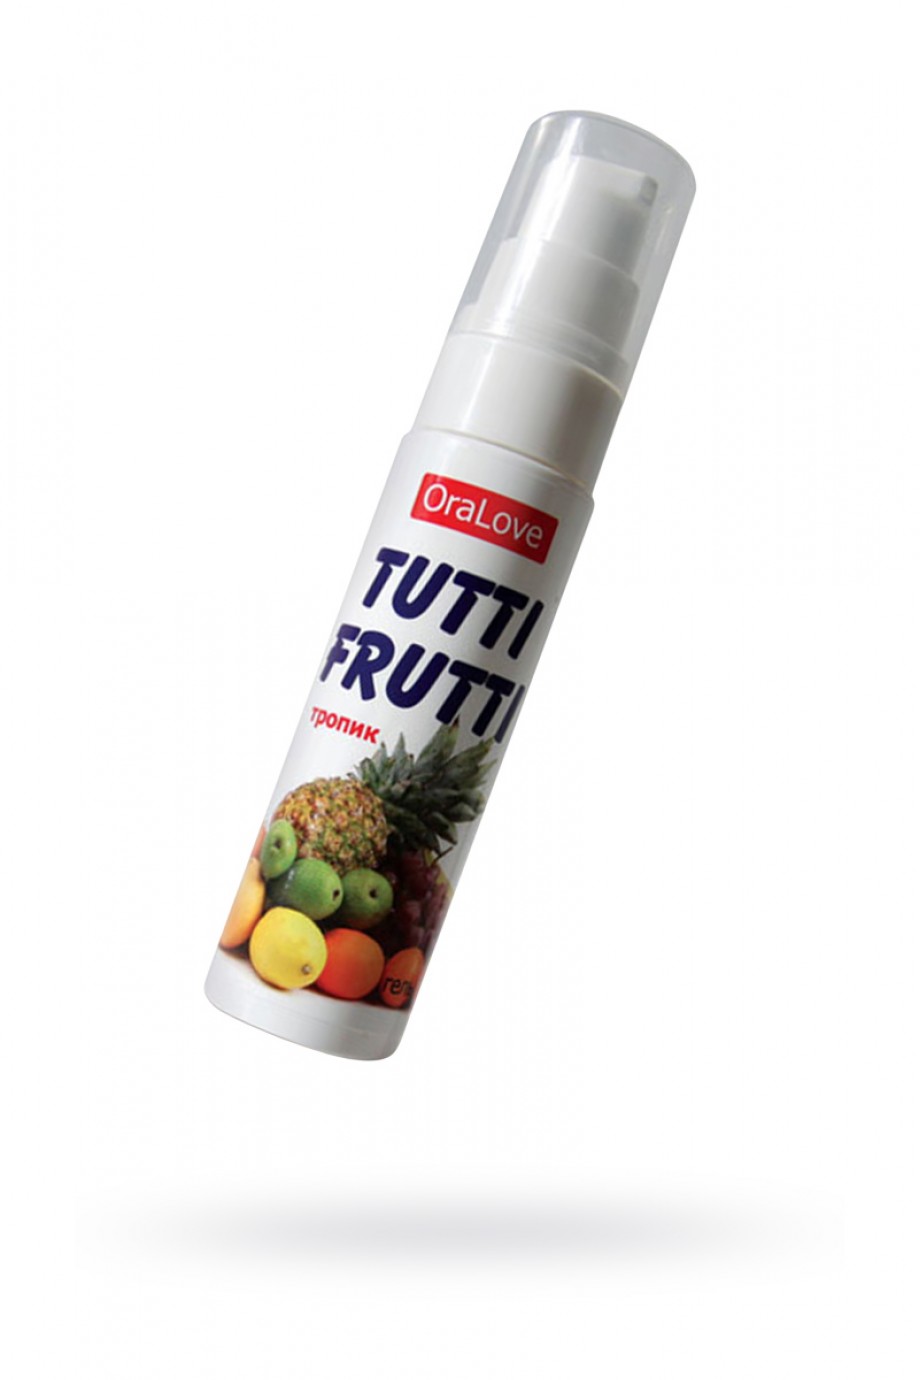 Съедобная гель-смазка TUTTI-FRUTTI для орального секса со вкусом экзотических фруктов, 30 г